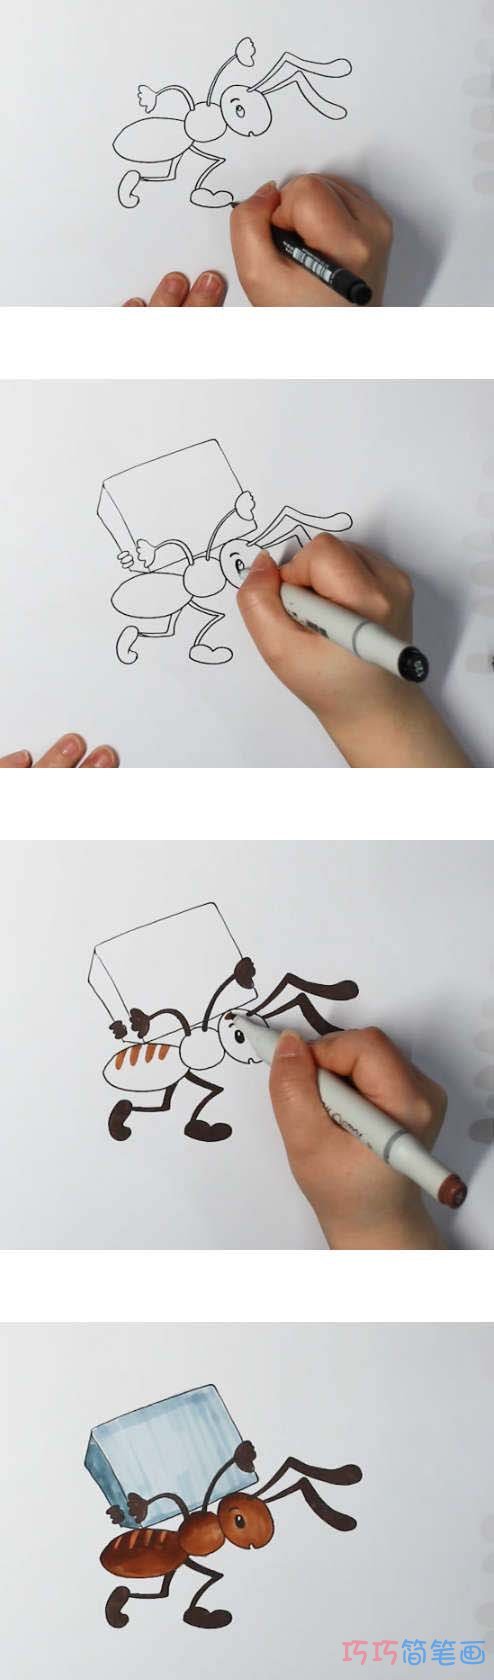 教你怎么画蚂蚁搬家简笔画步骤教程